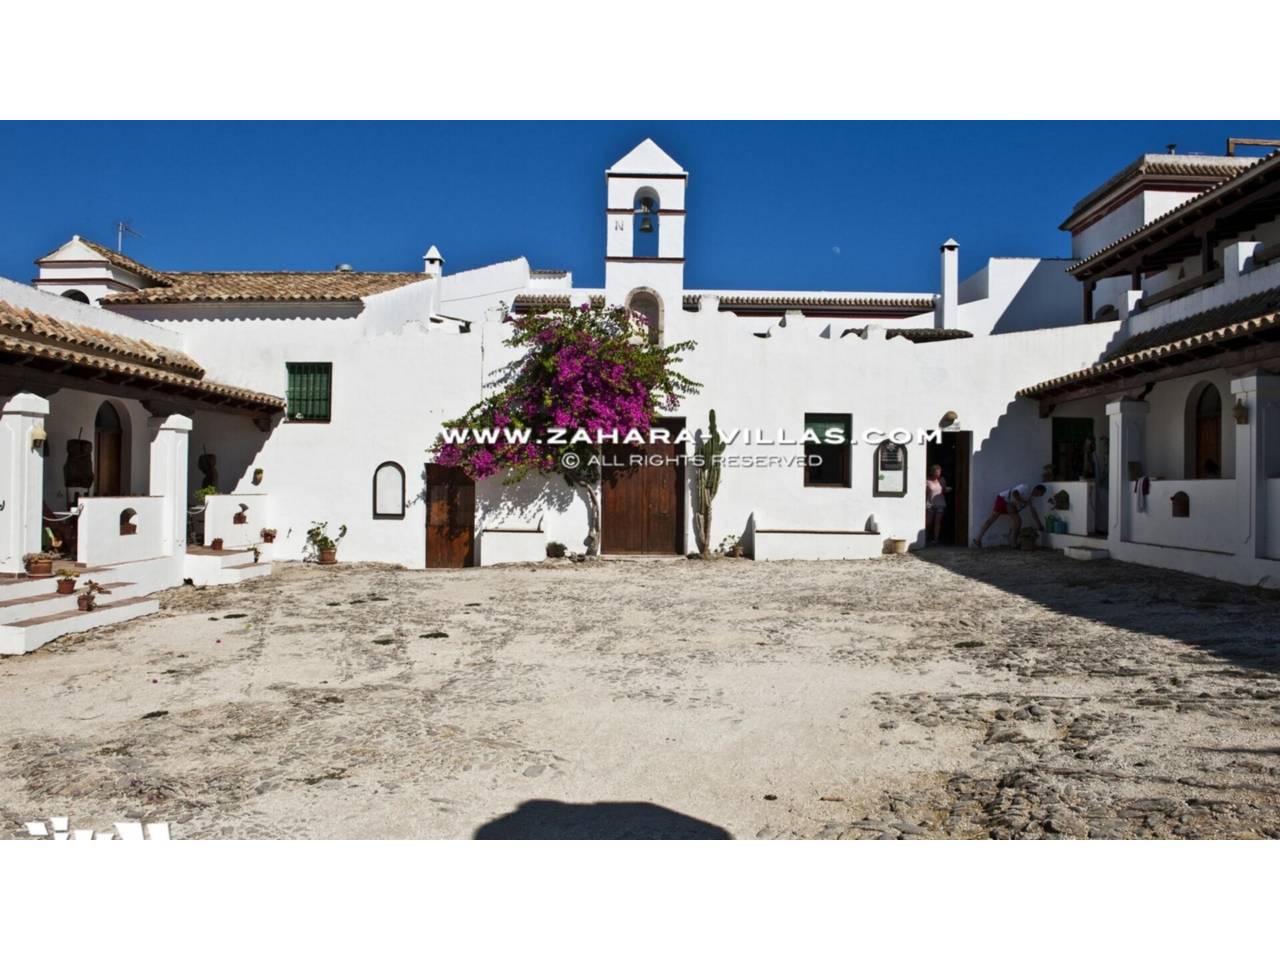 Imagen 3 de Hotel Rural en venta en San Ambrosio, Barbate